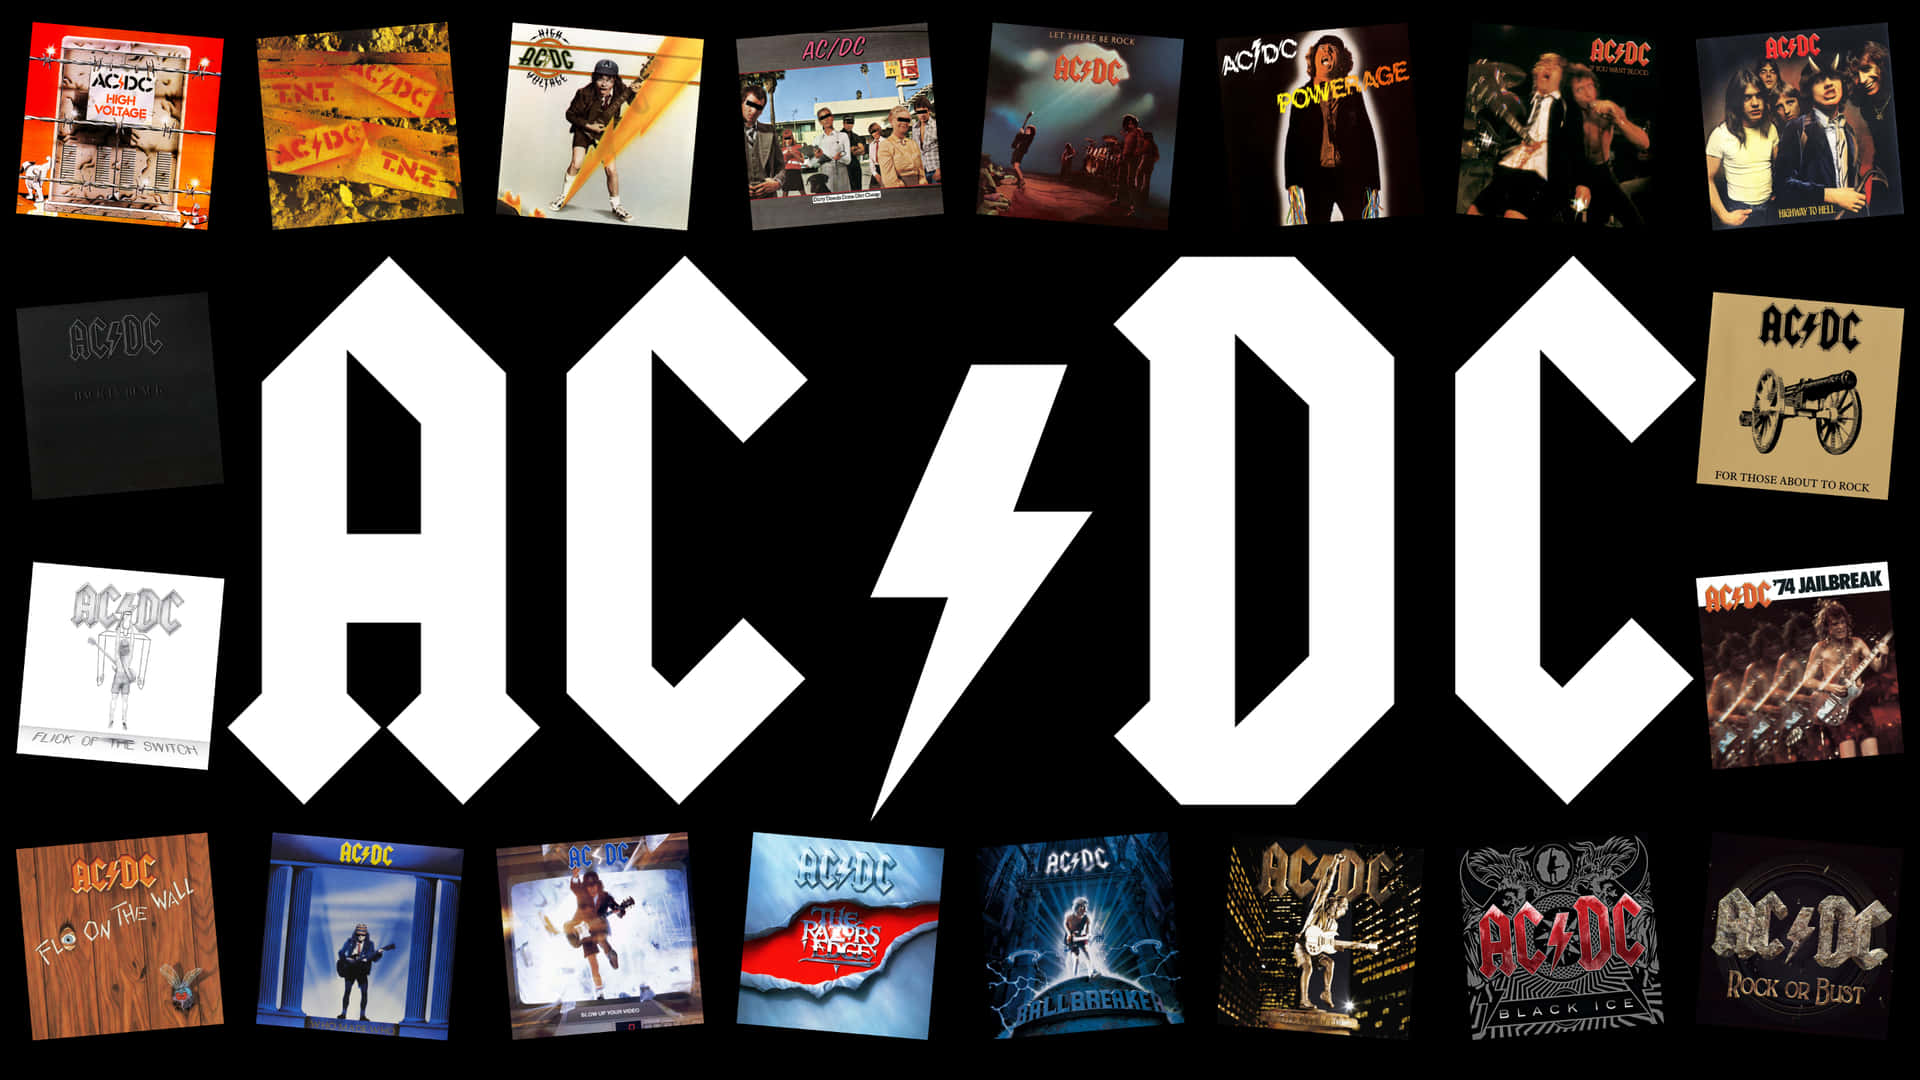 Caption: The Legends of Rock - AC/DC On Tour Wallpaper